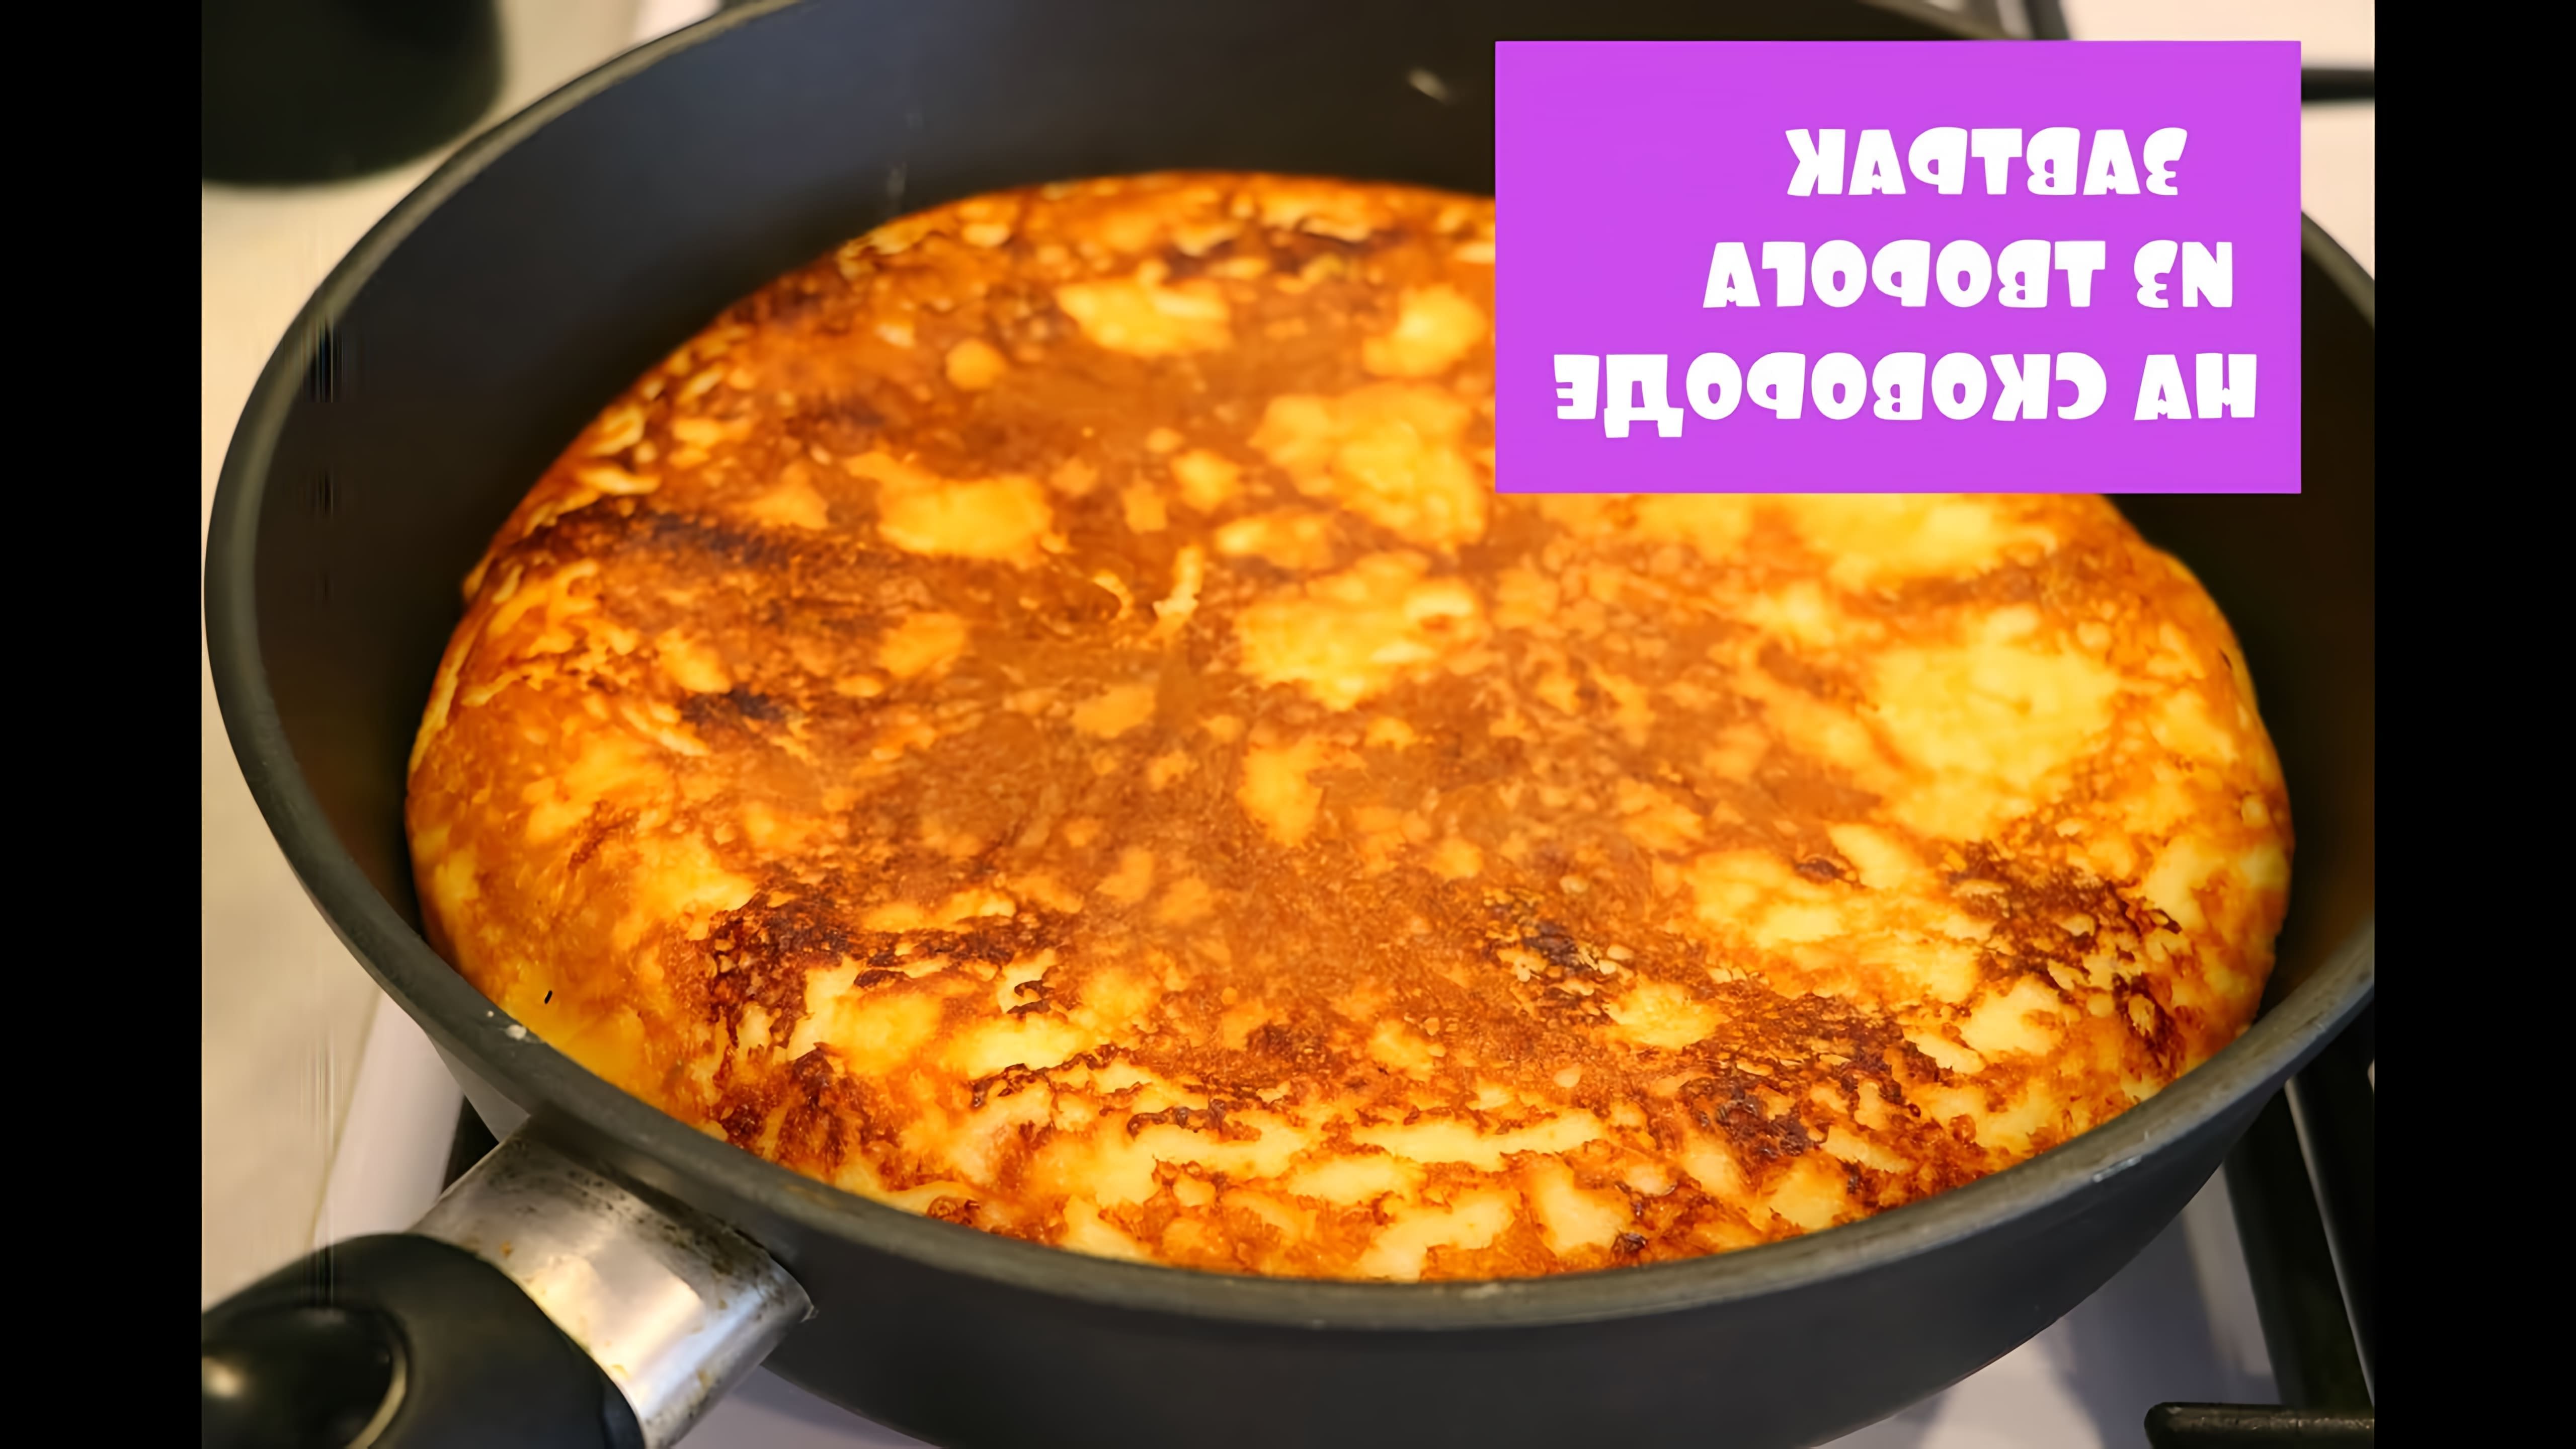 В этом видео Рена Буханова показывает, как приготовить быстрый и вкусный завтрак из творога на сковороде